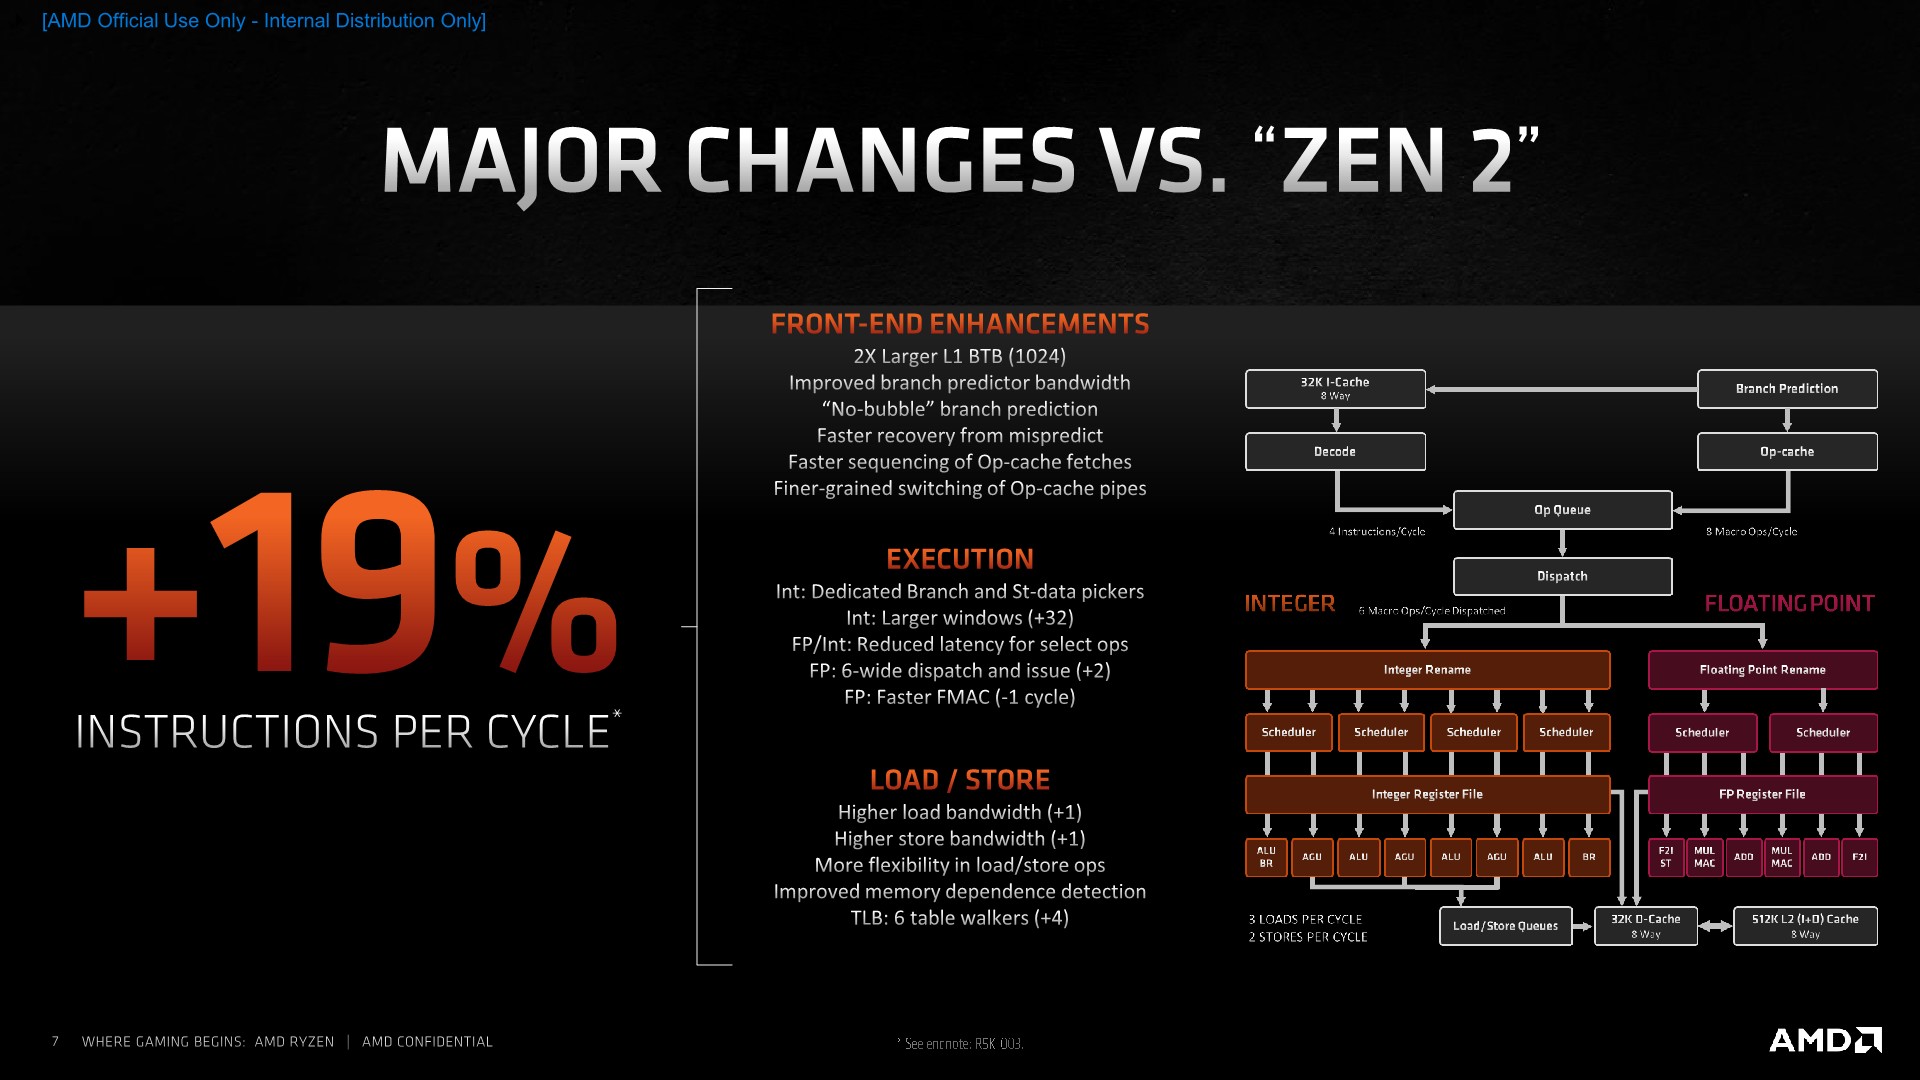 zen 4 integrated graphics